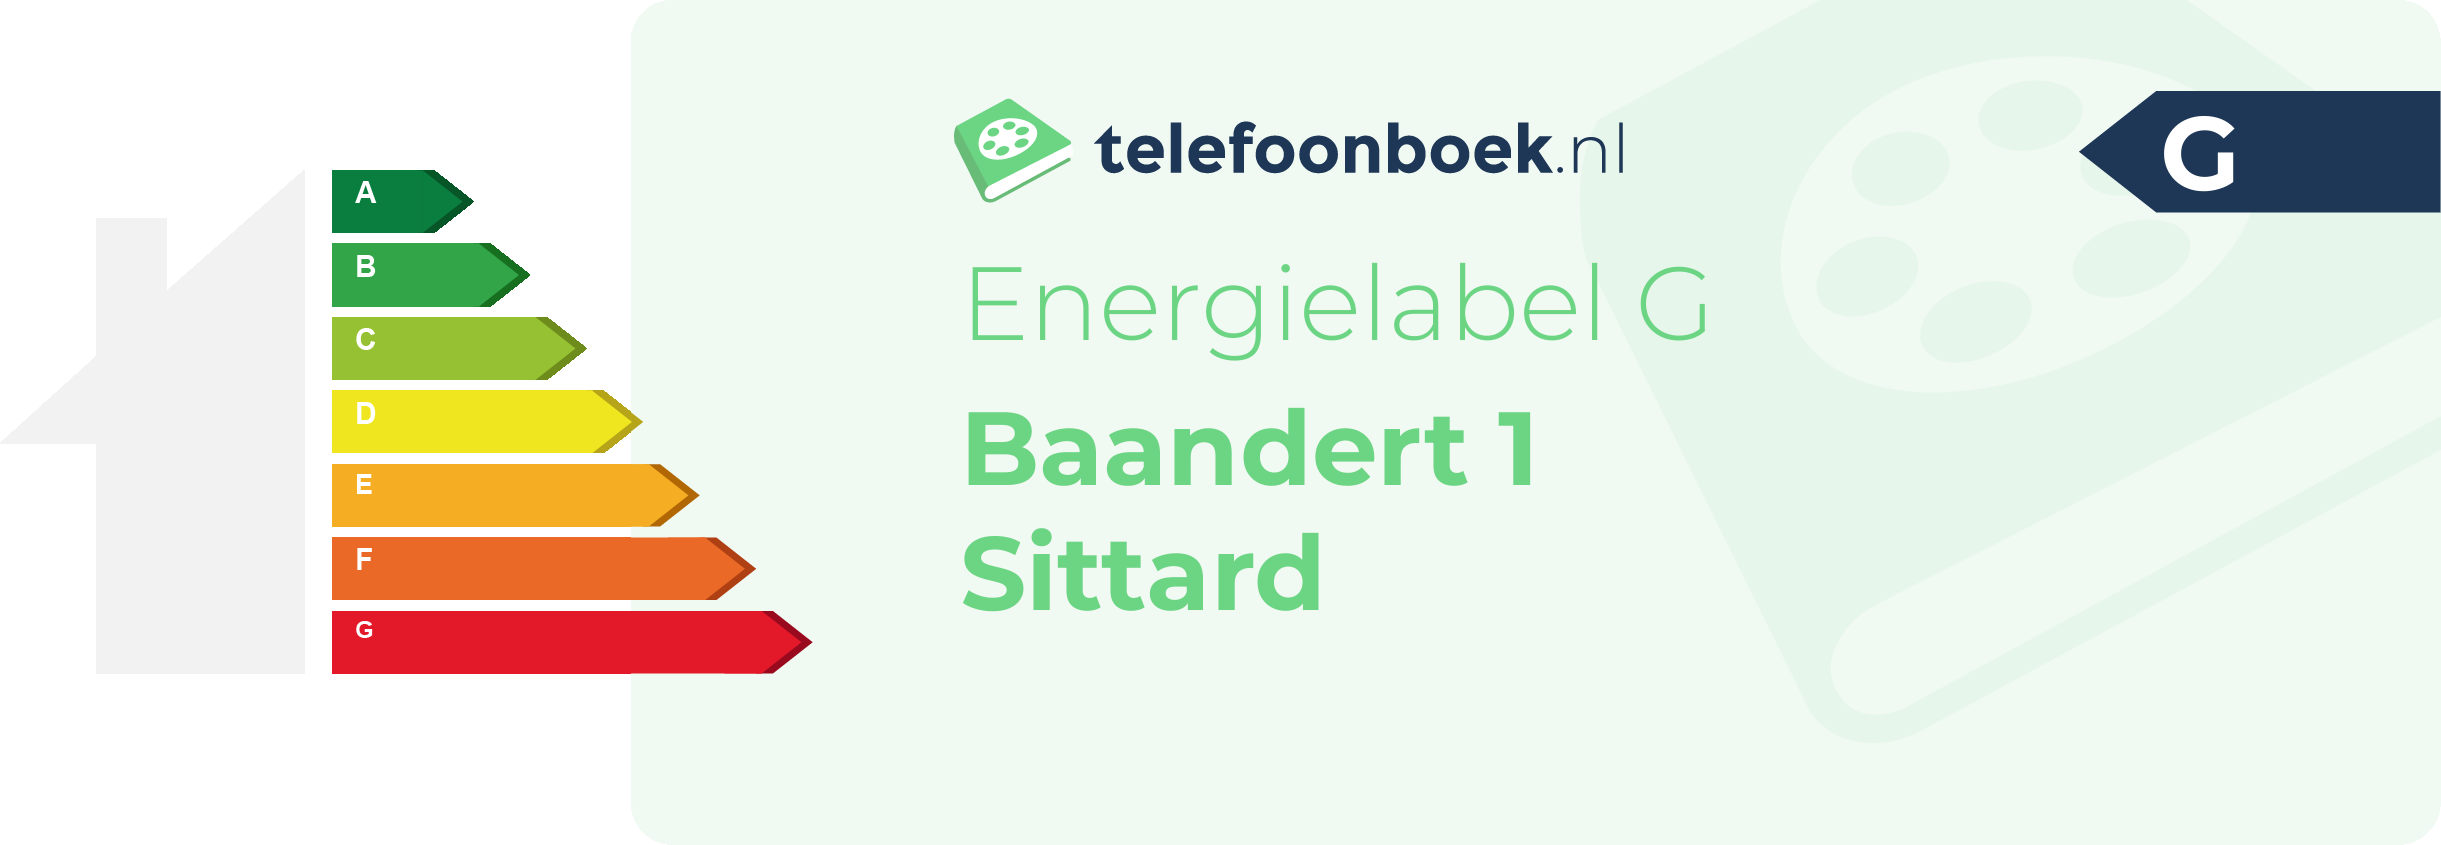 Energielabel Baandert 1 Sittard